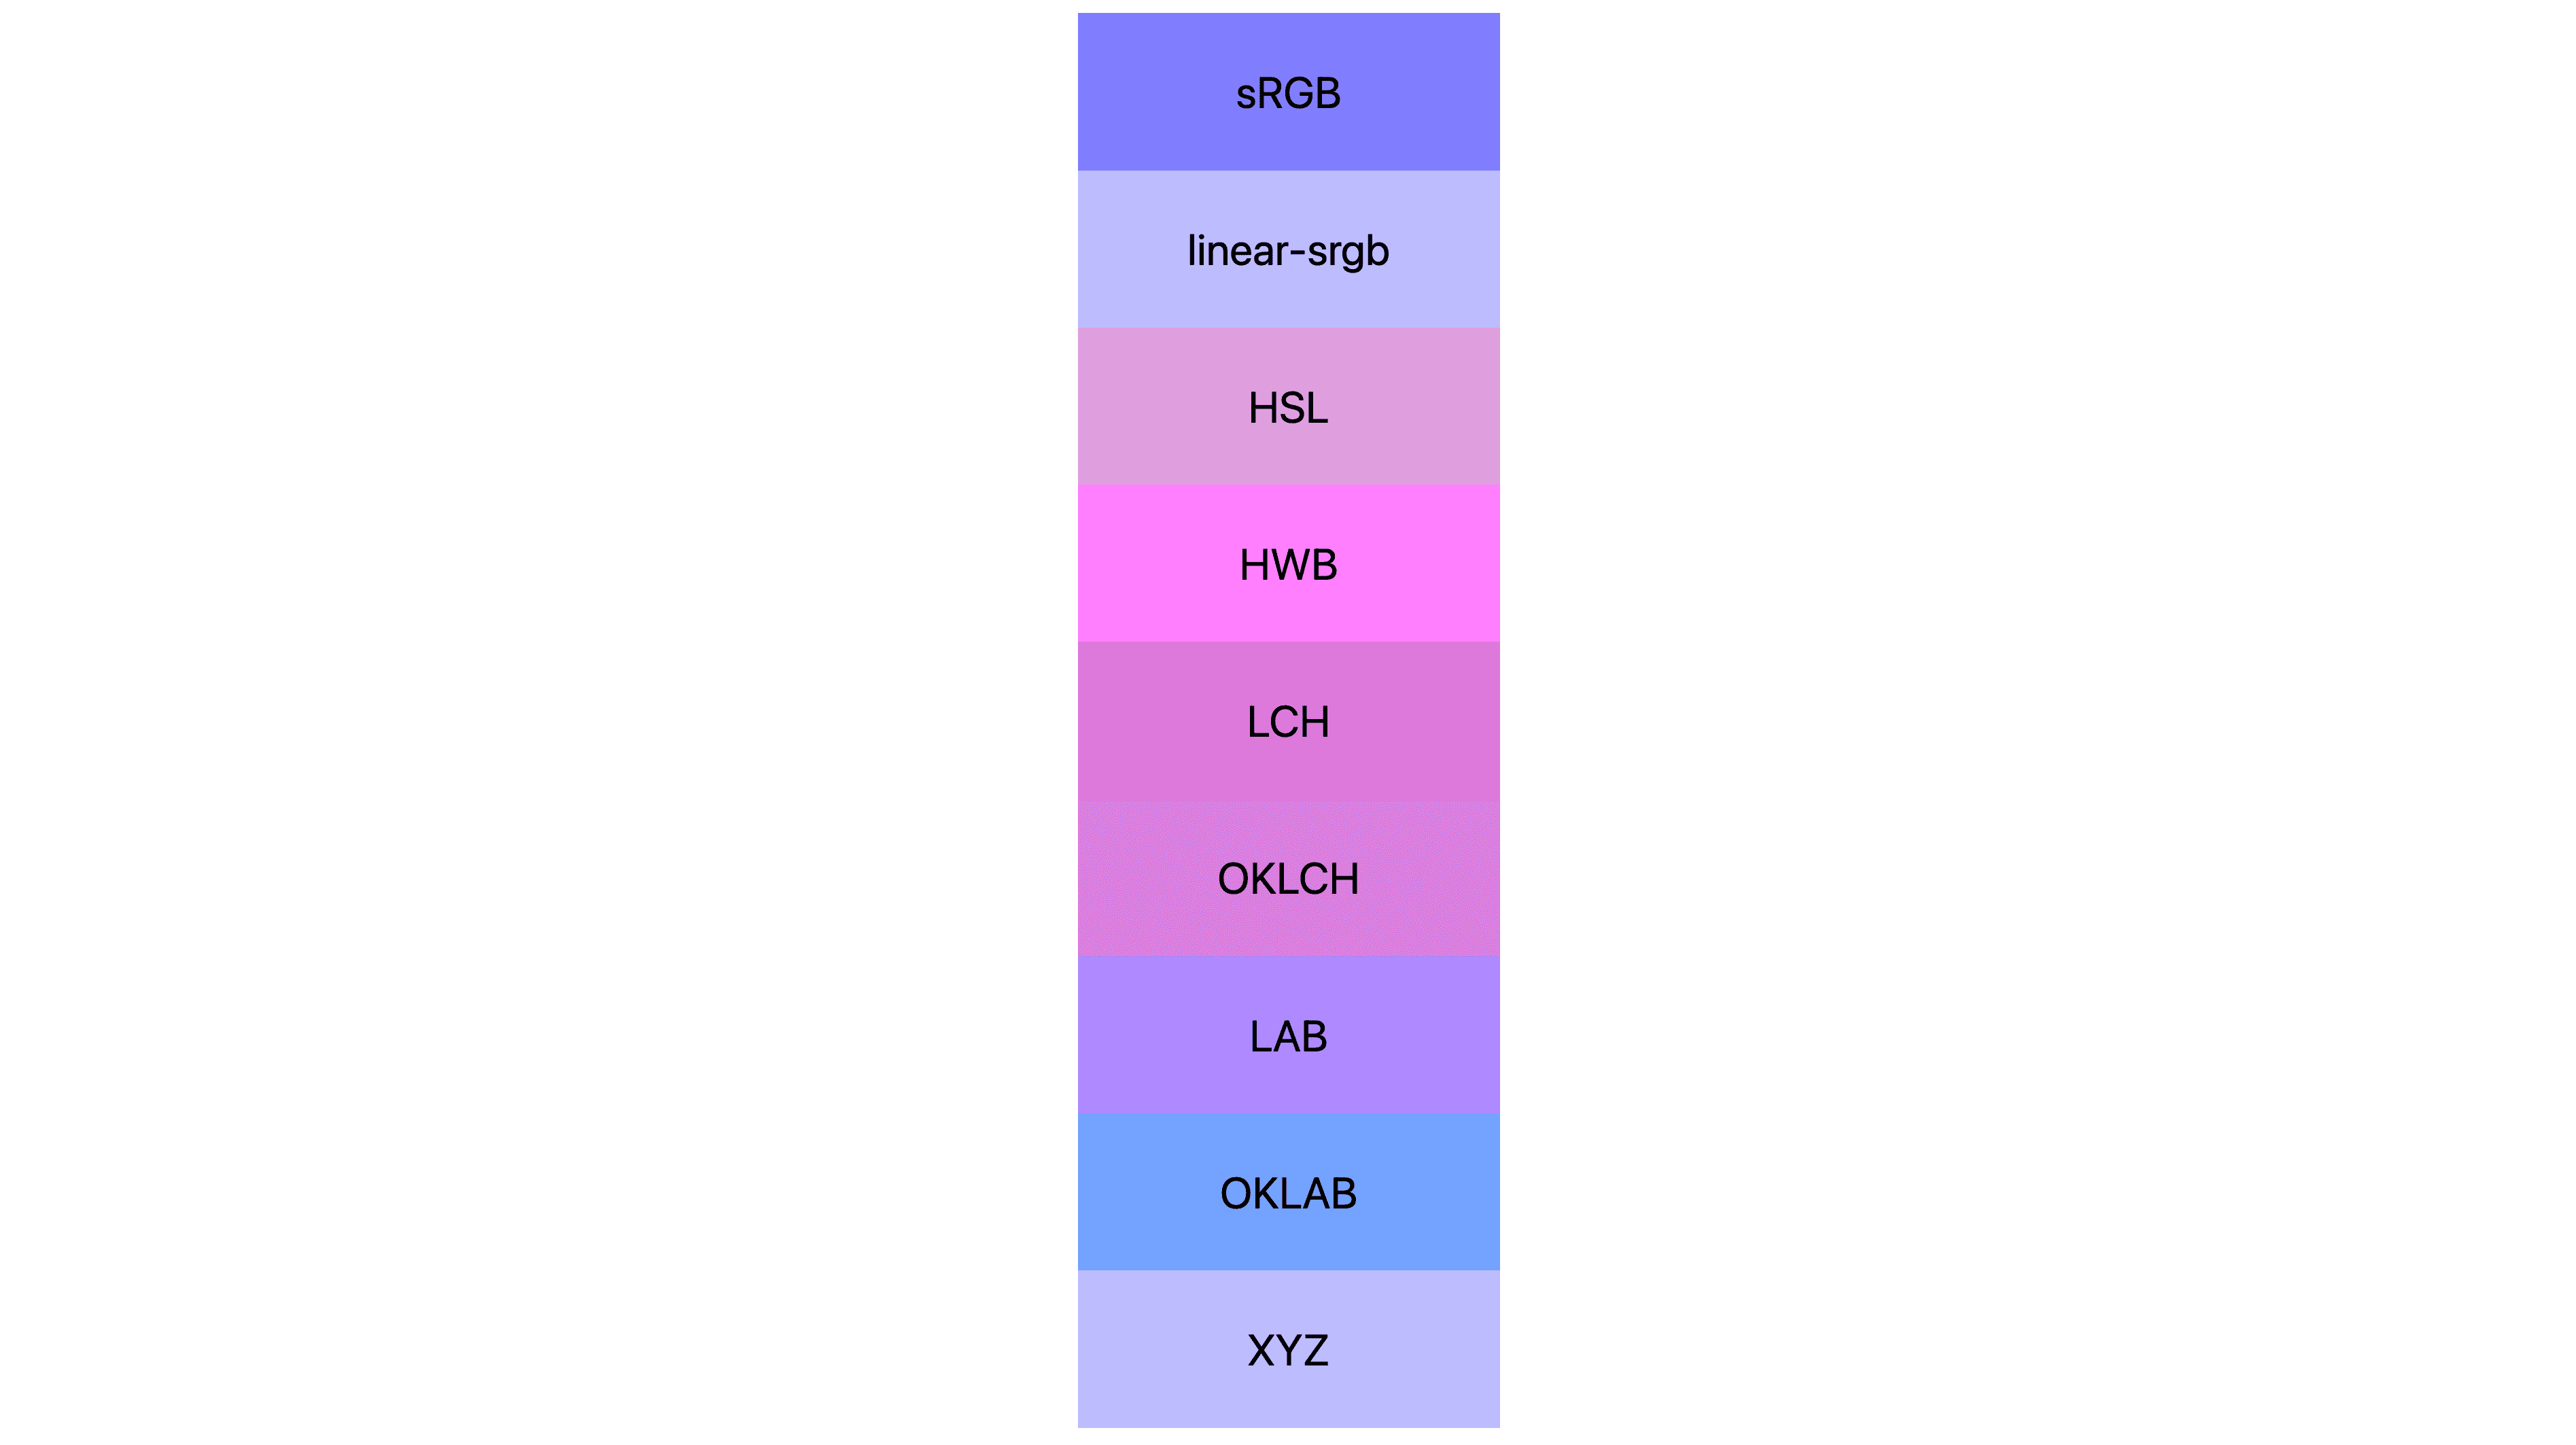 7 ruang warna (sRGB, linear-sRGB, lch, oklch, lab, oklab, xyz) masing-masing ditampilkan dengan hasil yang berbeda. Banyak yang berwarna merah muda atau ungu, sebagian kecil yang sebenarnya masih berwarna biru.